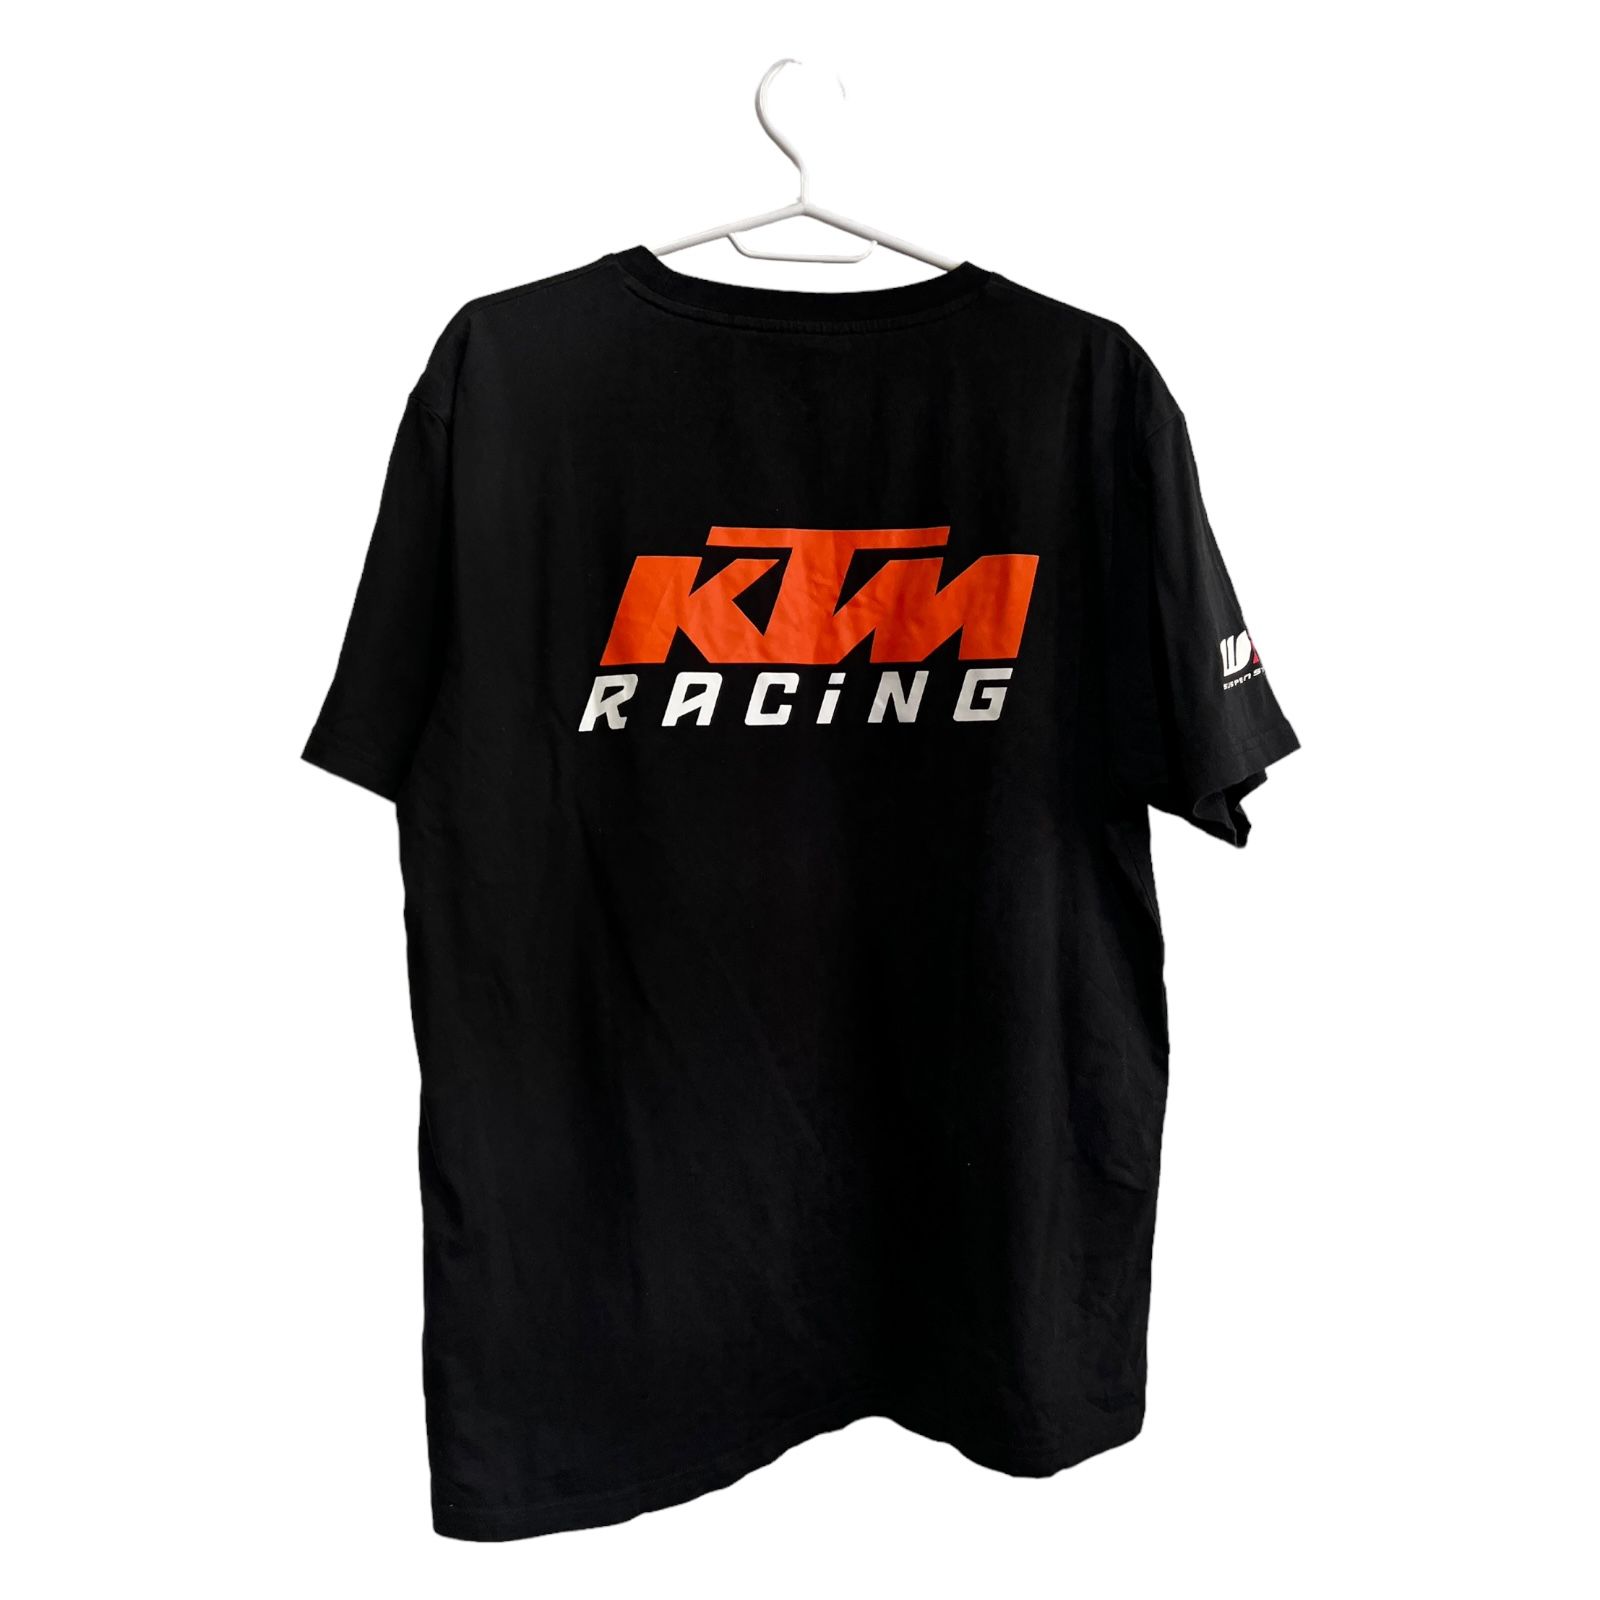 Pre-owned Racing X Vintage Ktm Racing T-shirt In Black